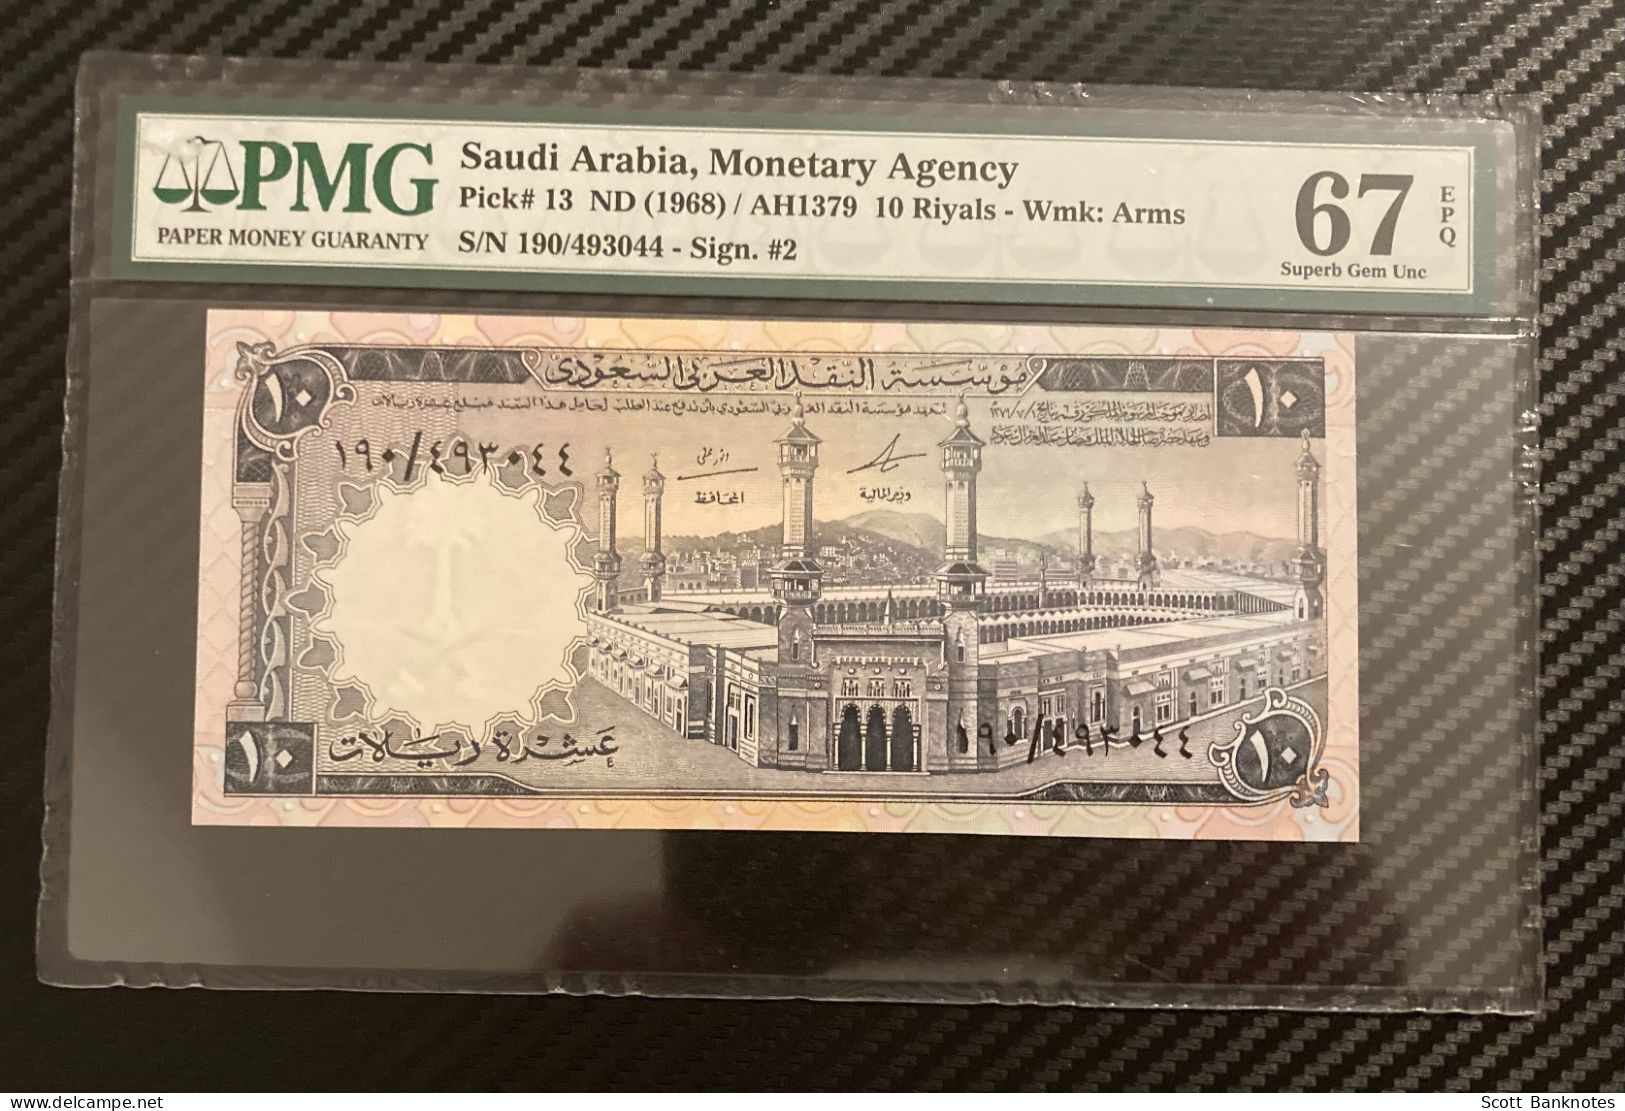 1968, PMG 67 Superb Gem Unc, Saudi Arabia 10 Riyals, Wmk Arms, Pick 13, SN 190 493044 - Saoedi-Arabië